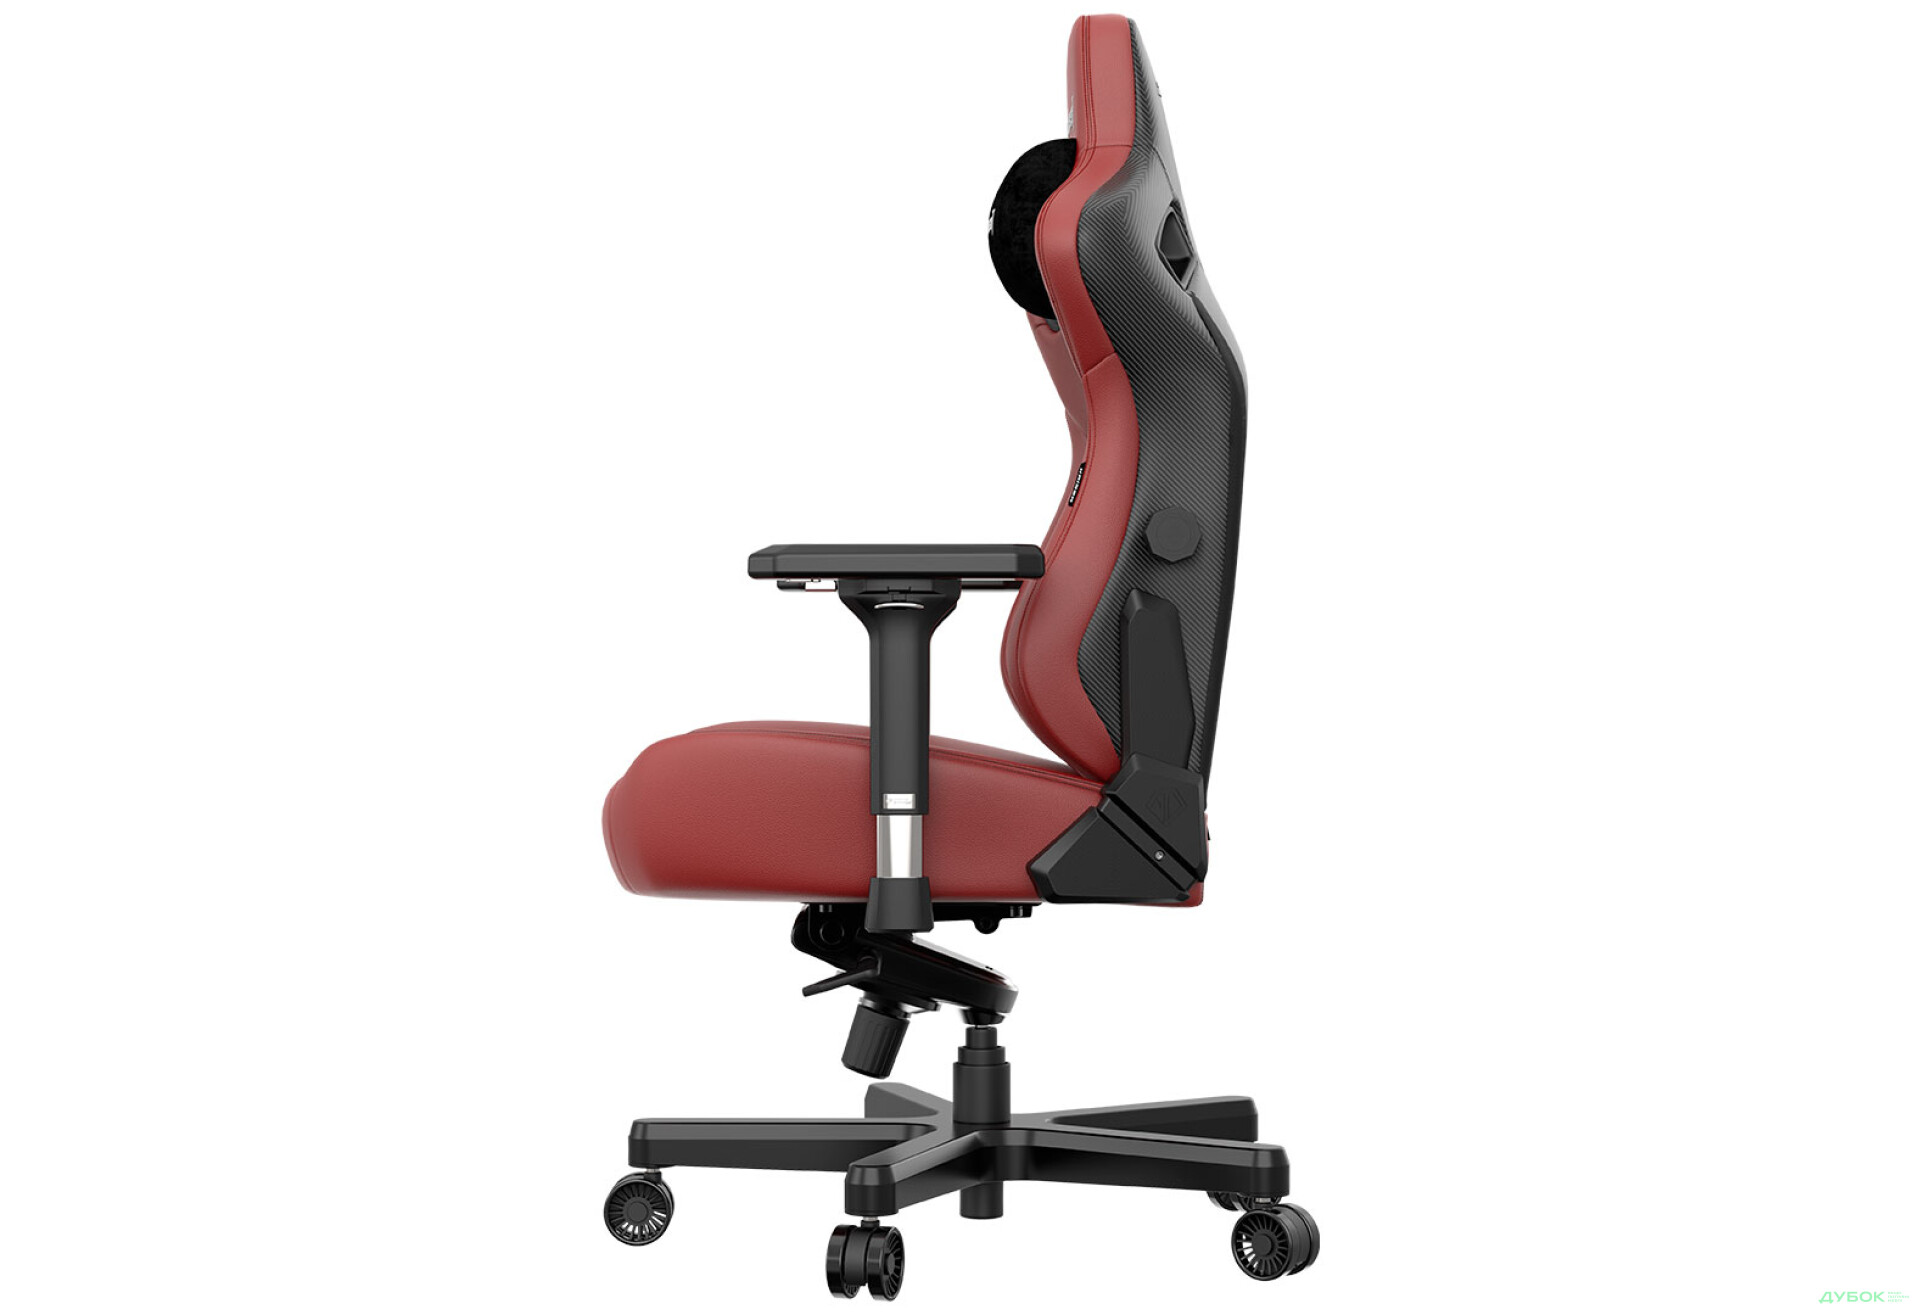 Фото 7 - Компьютерное кресло Anda Seat Kaiser 3 72x57x136 см игровое, бордовое